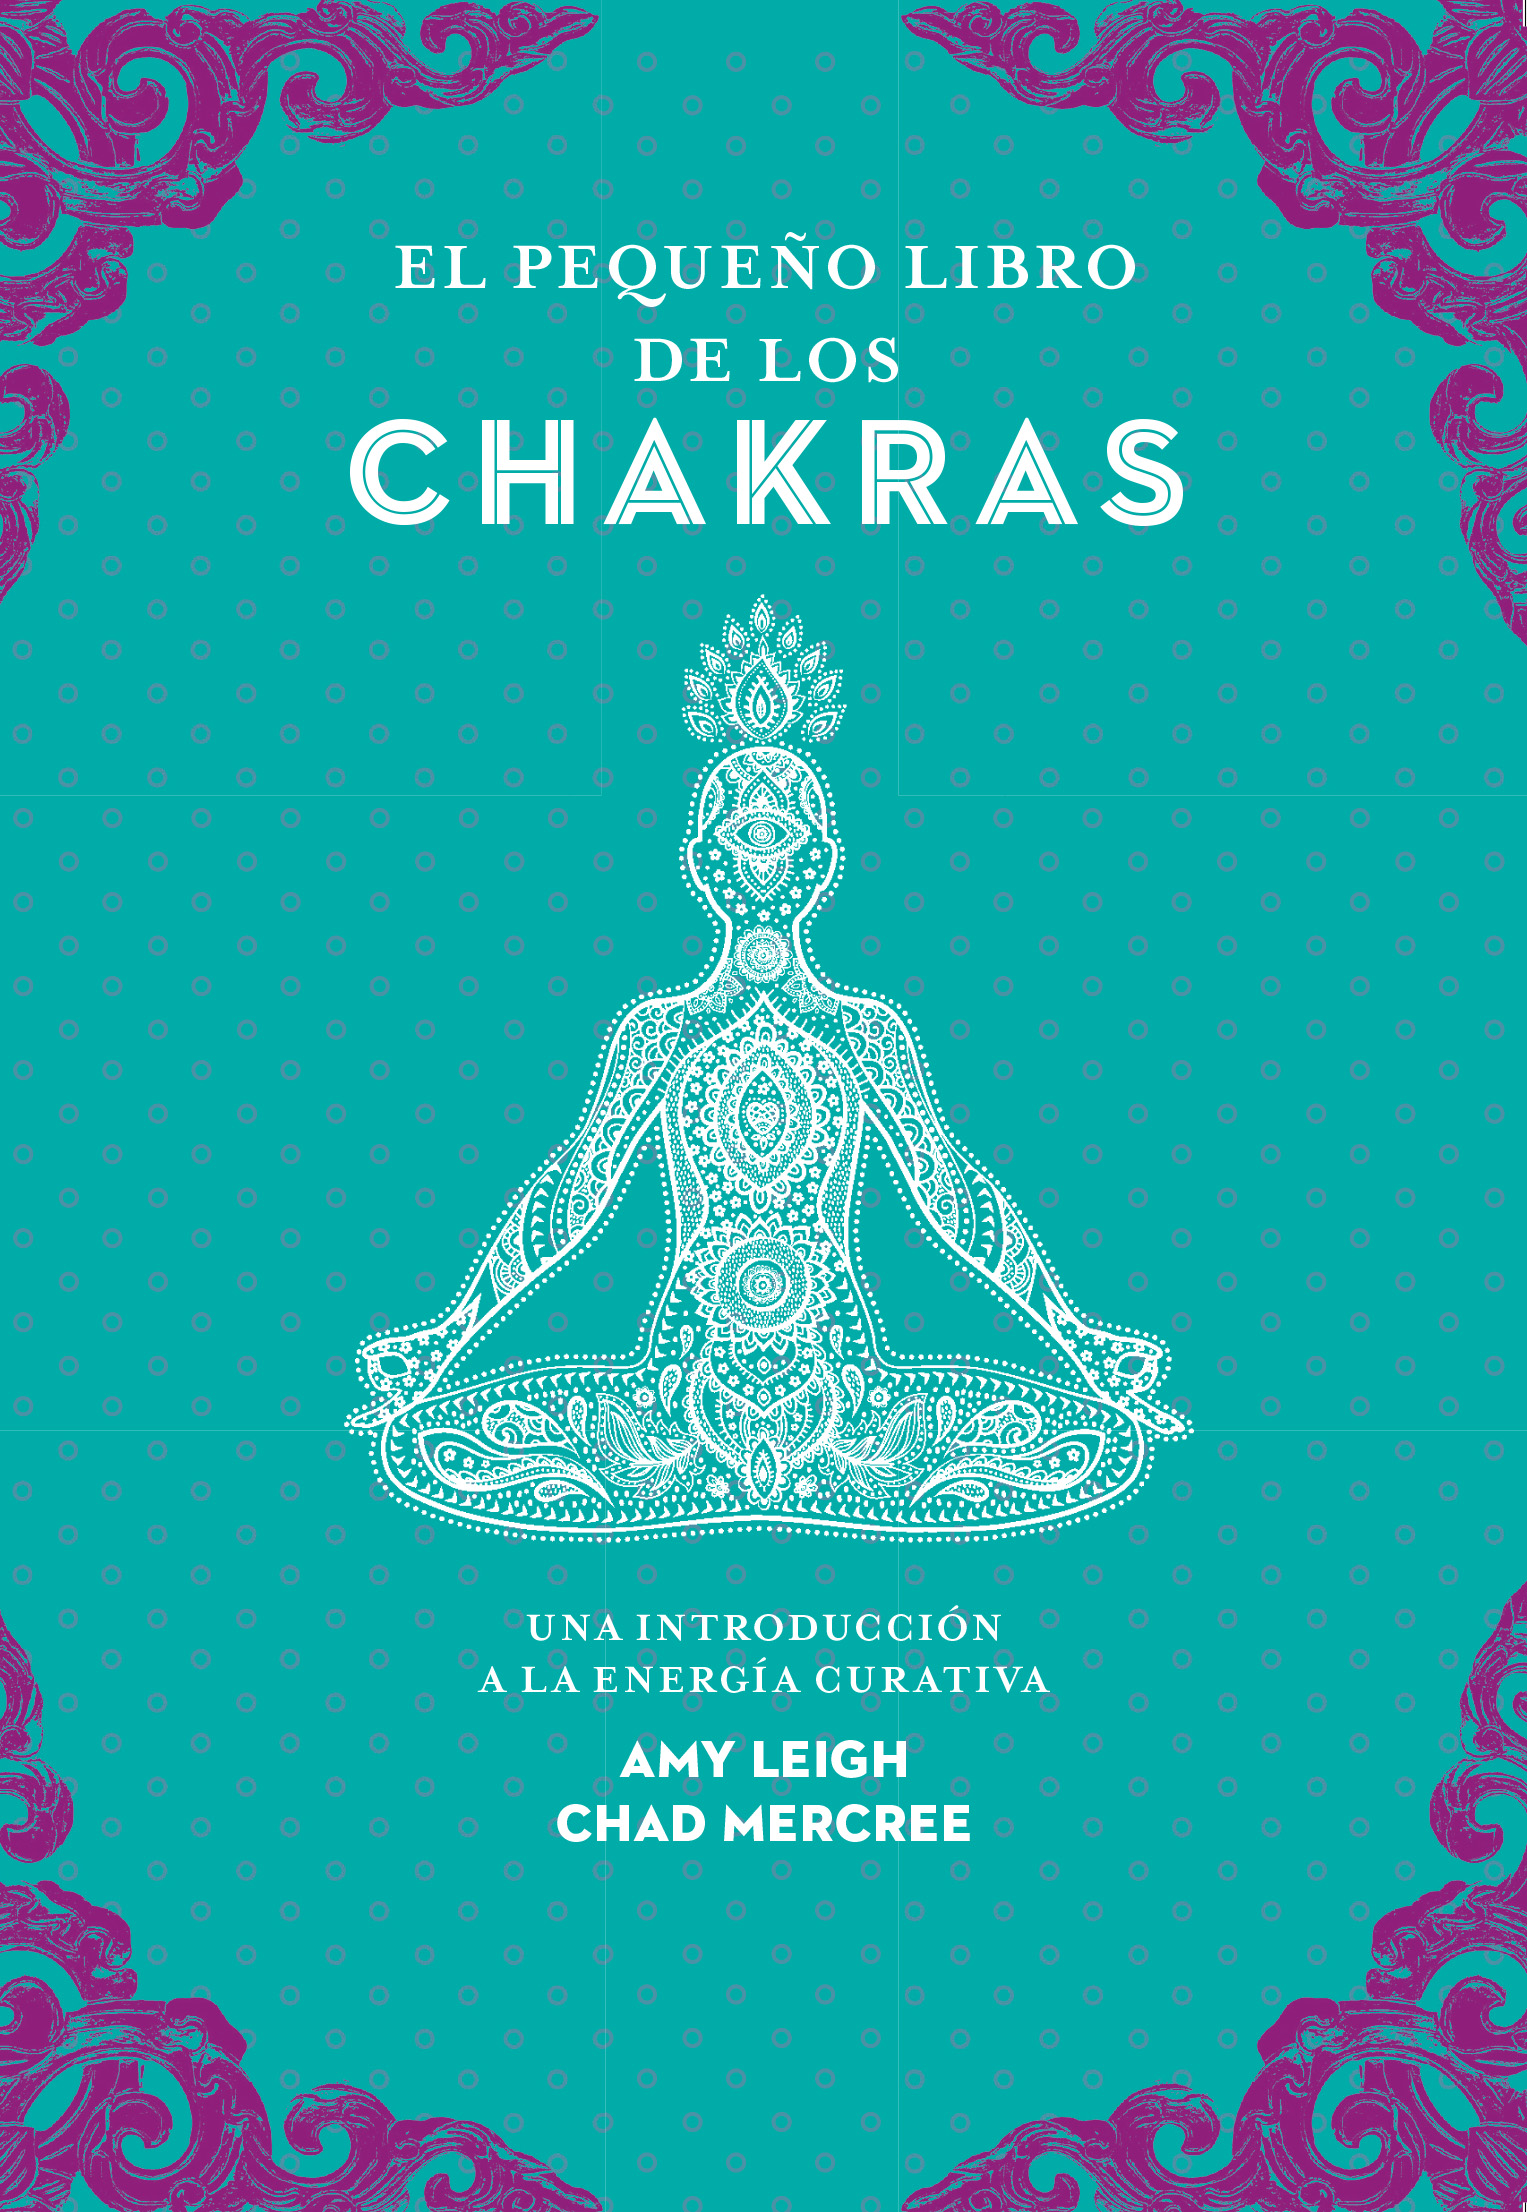 El pequeño libro de los chakras   «Una introducción a la energía curativa»